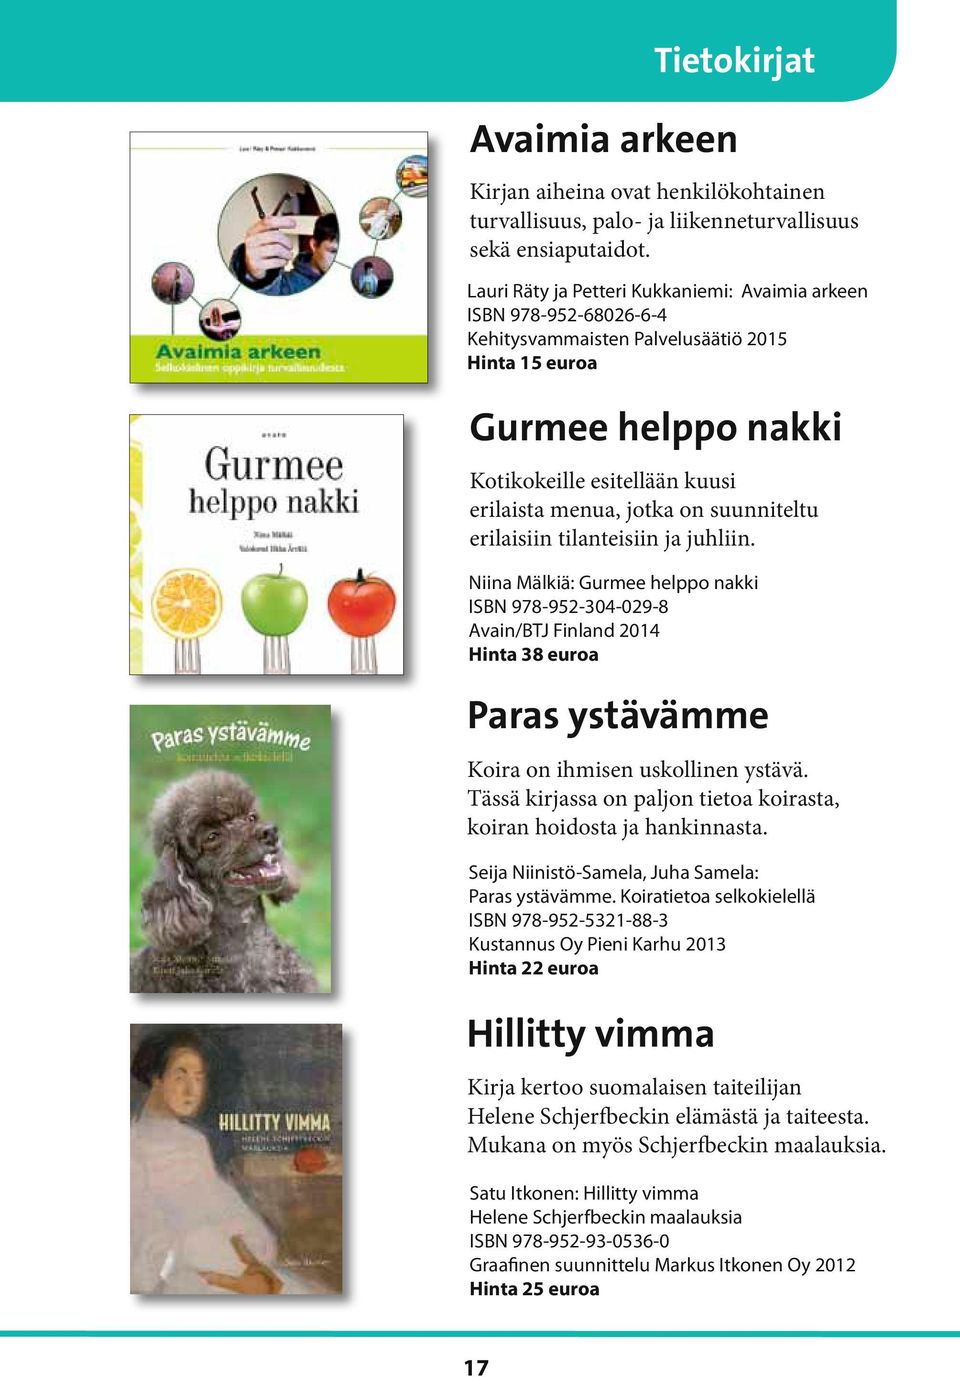 suunniteltu erilaisiin tilanteisiin ja juhliin. Niina Mälkiä: Gurmee helppo nakki ISBN 978-952-304-029-8 Avain/BTJ Finland 2014 Hinta 38 euroa Paras ystävämme Koira on ihmisen uskollinen ystävä.